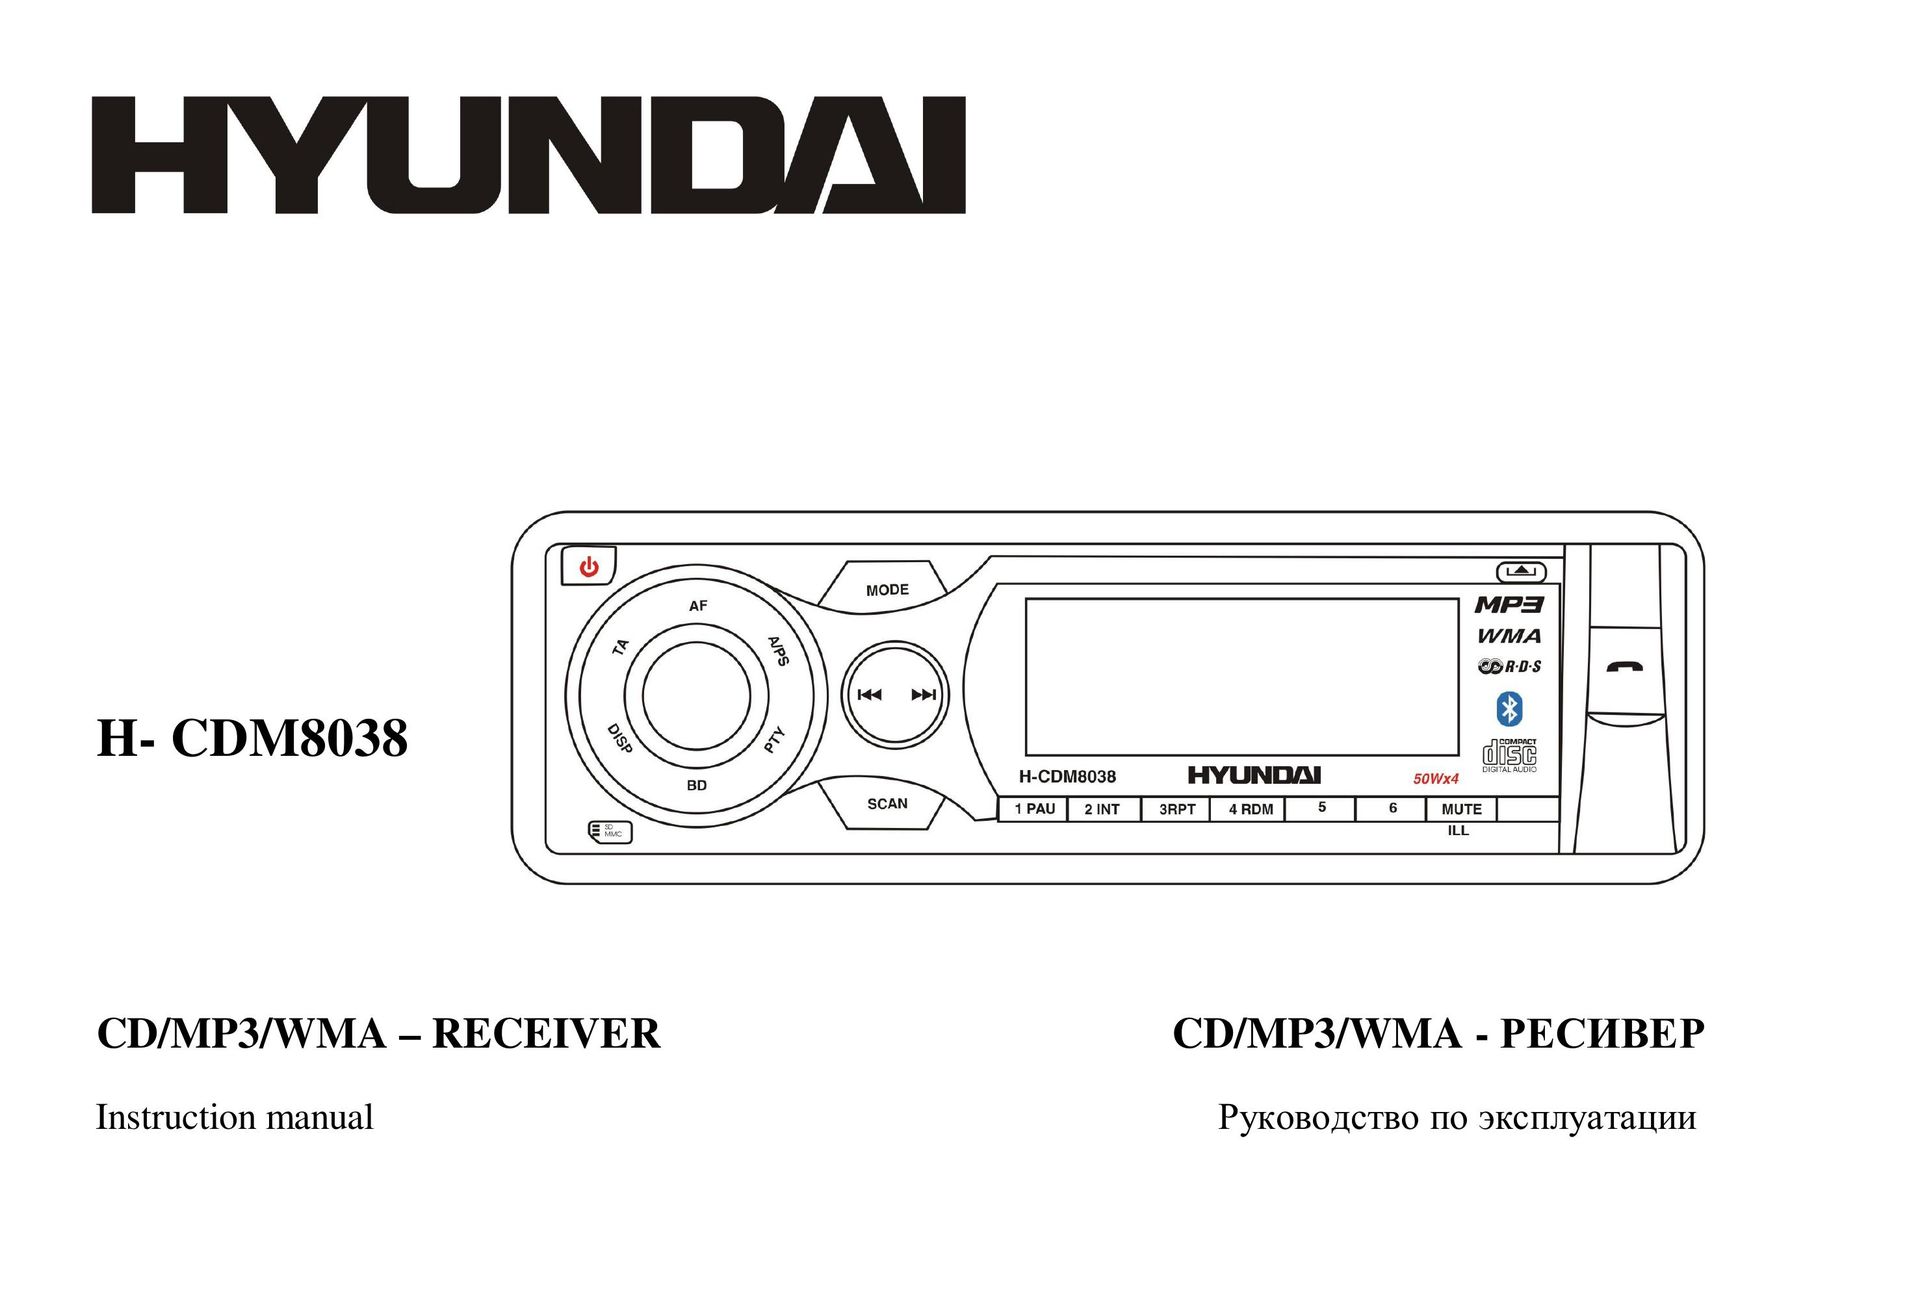 Hyundai H- CDM8038 Car Stereo System User Manual